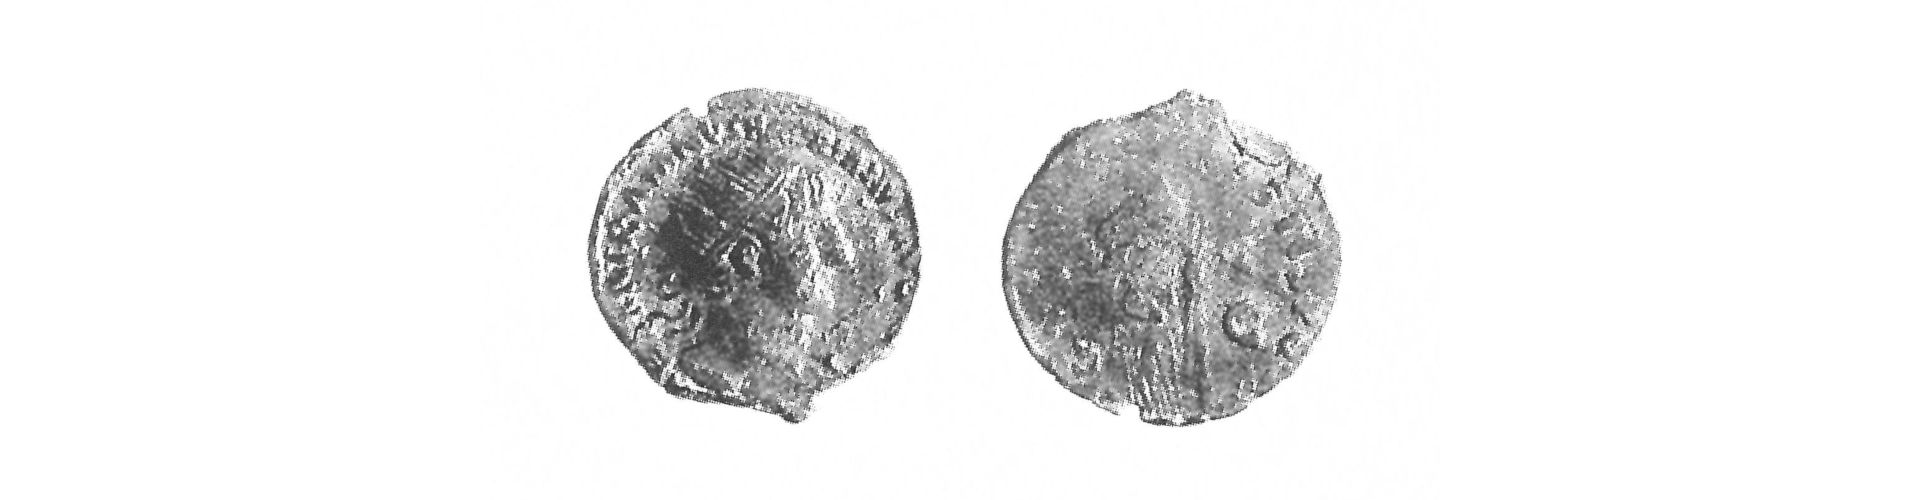 Beispiel für gegossene Münze